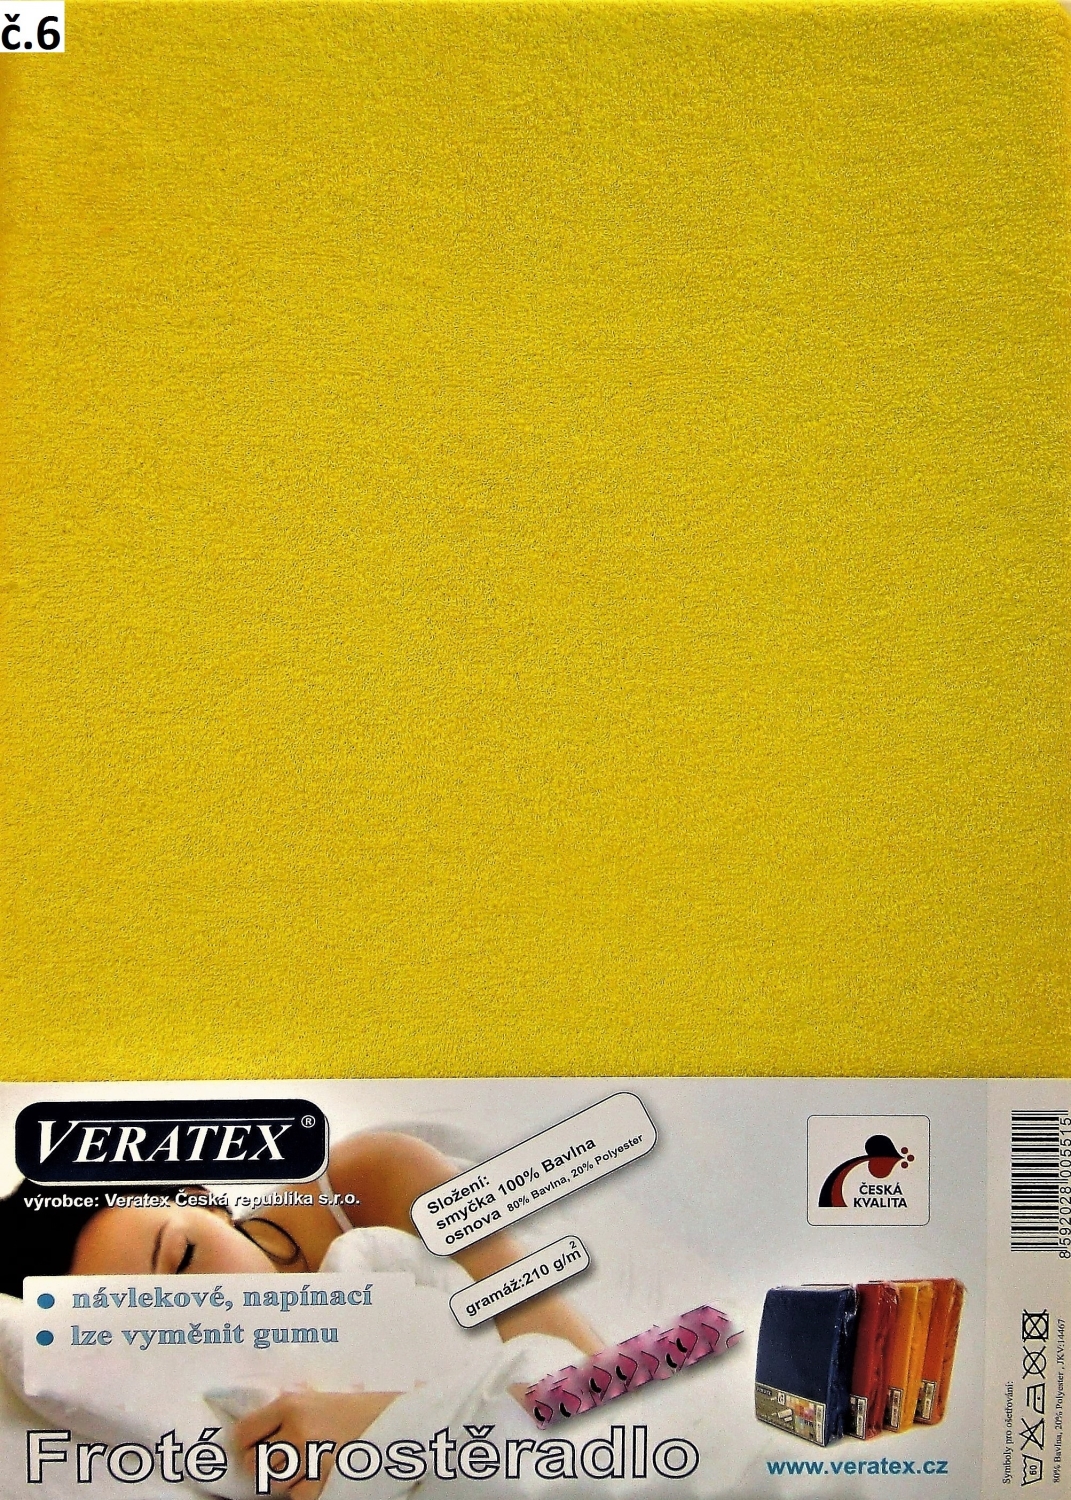 Veratex Froté prostěradlo dvoulůžko 180x200/20cm (č. 6- stř.žlutá)